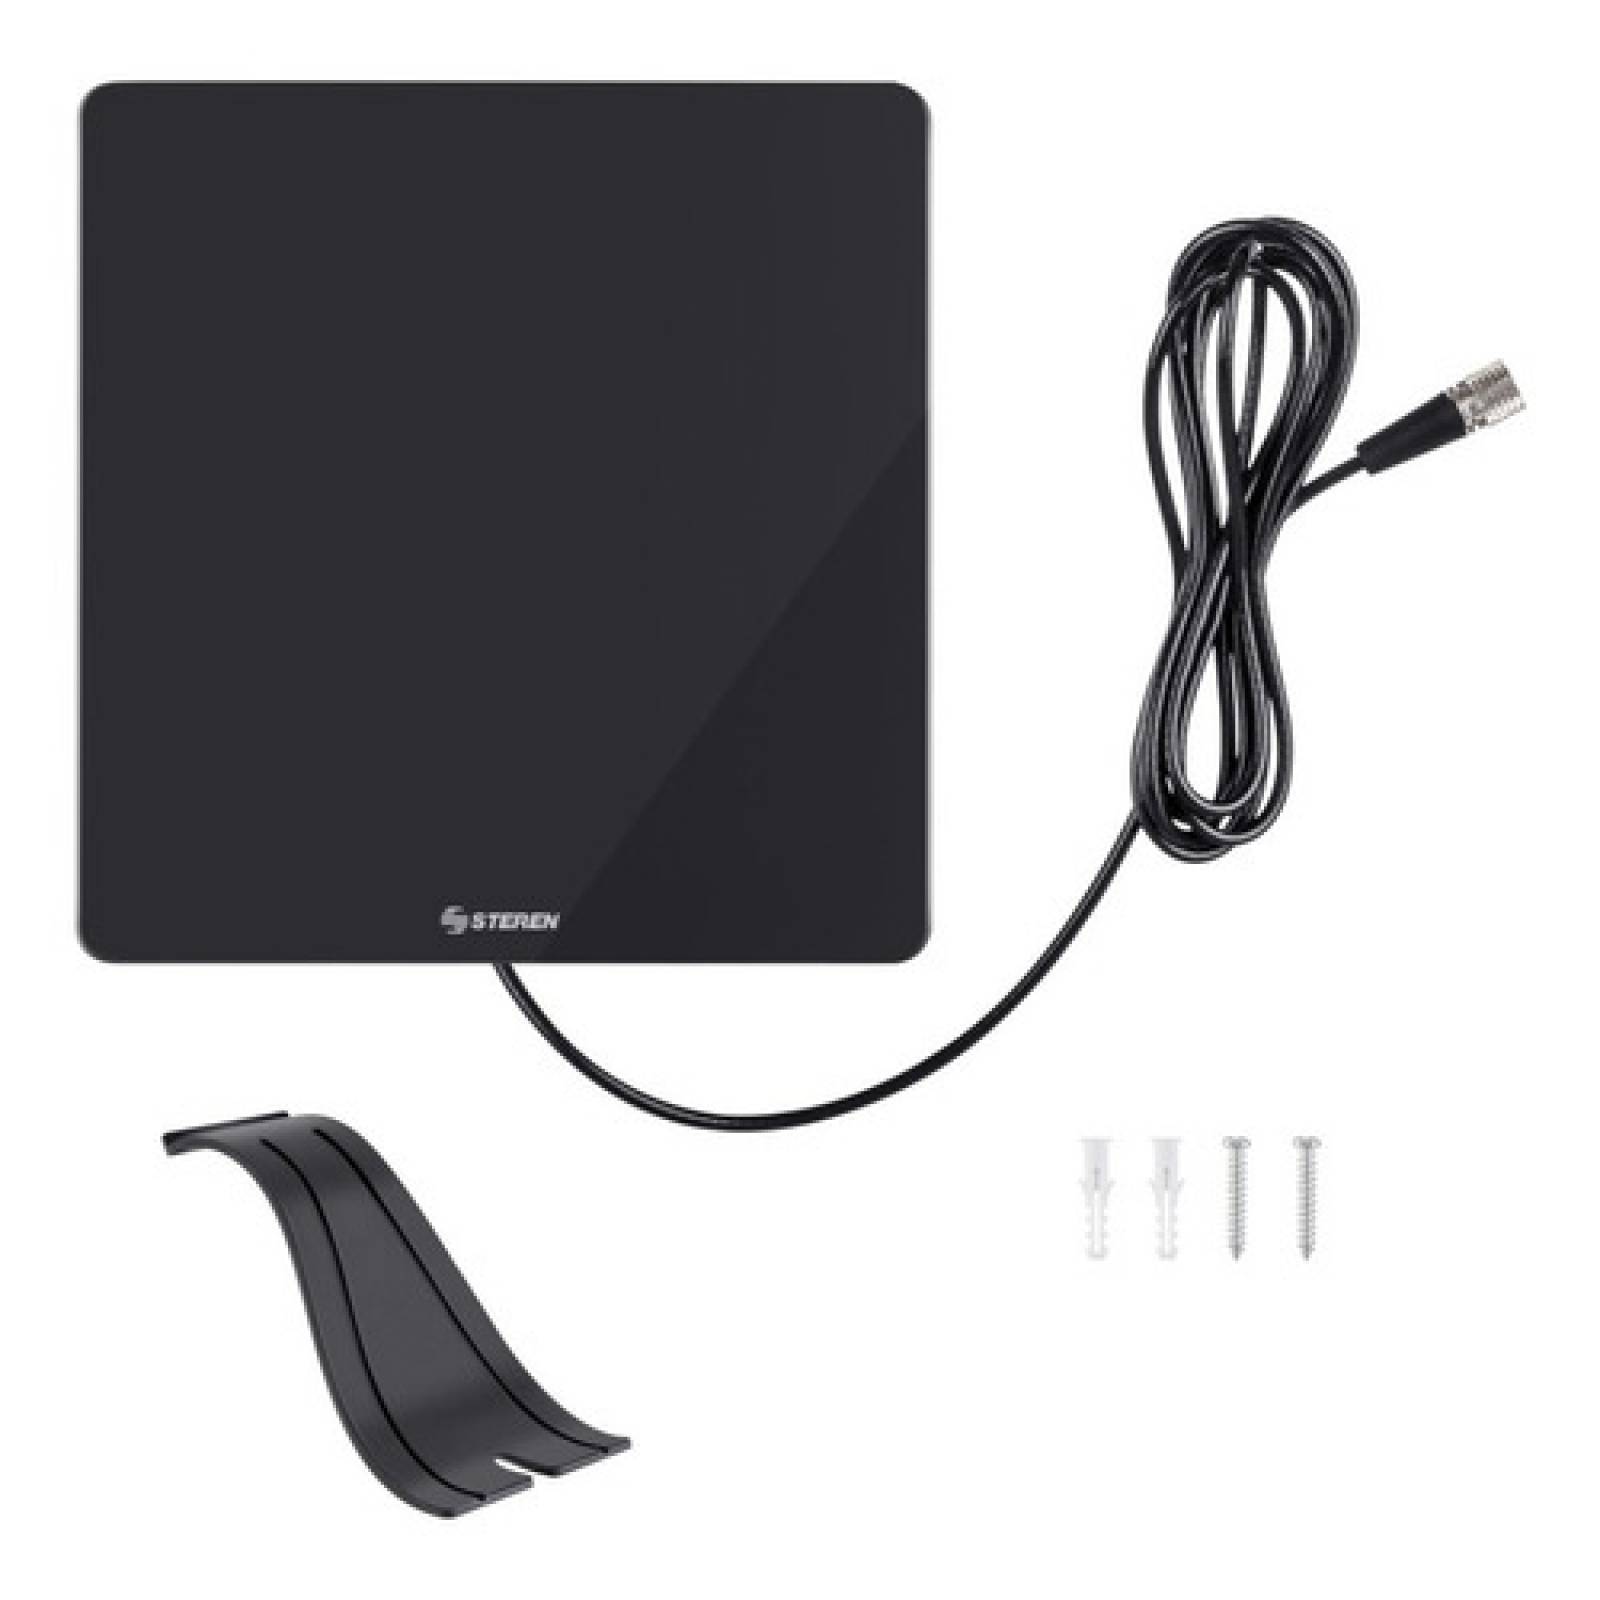 Antena para interior HDTV omnidireccional - Rantec Electronics